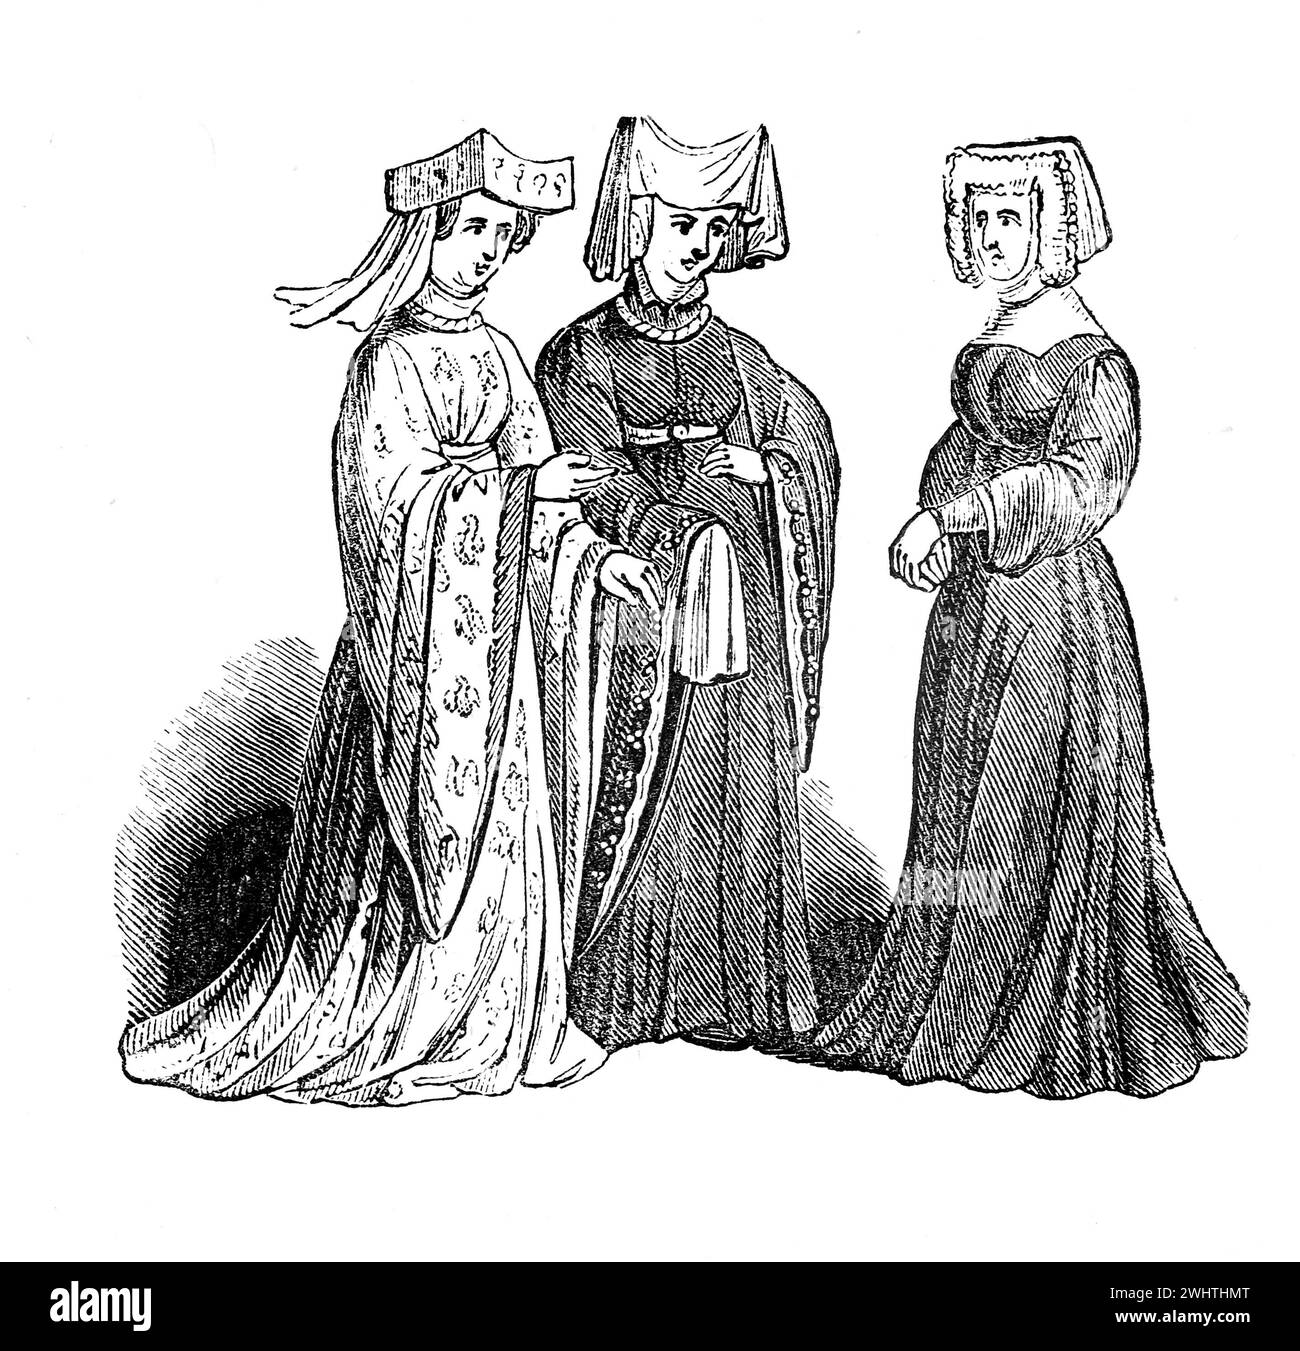 Disfraz femenino en la época de Enrique V de Inglaterra. Ilustración en blanco y negro de la "vieja Inglaterra" publicada por James Sangster en 1860. Foto de stock